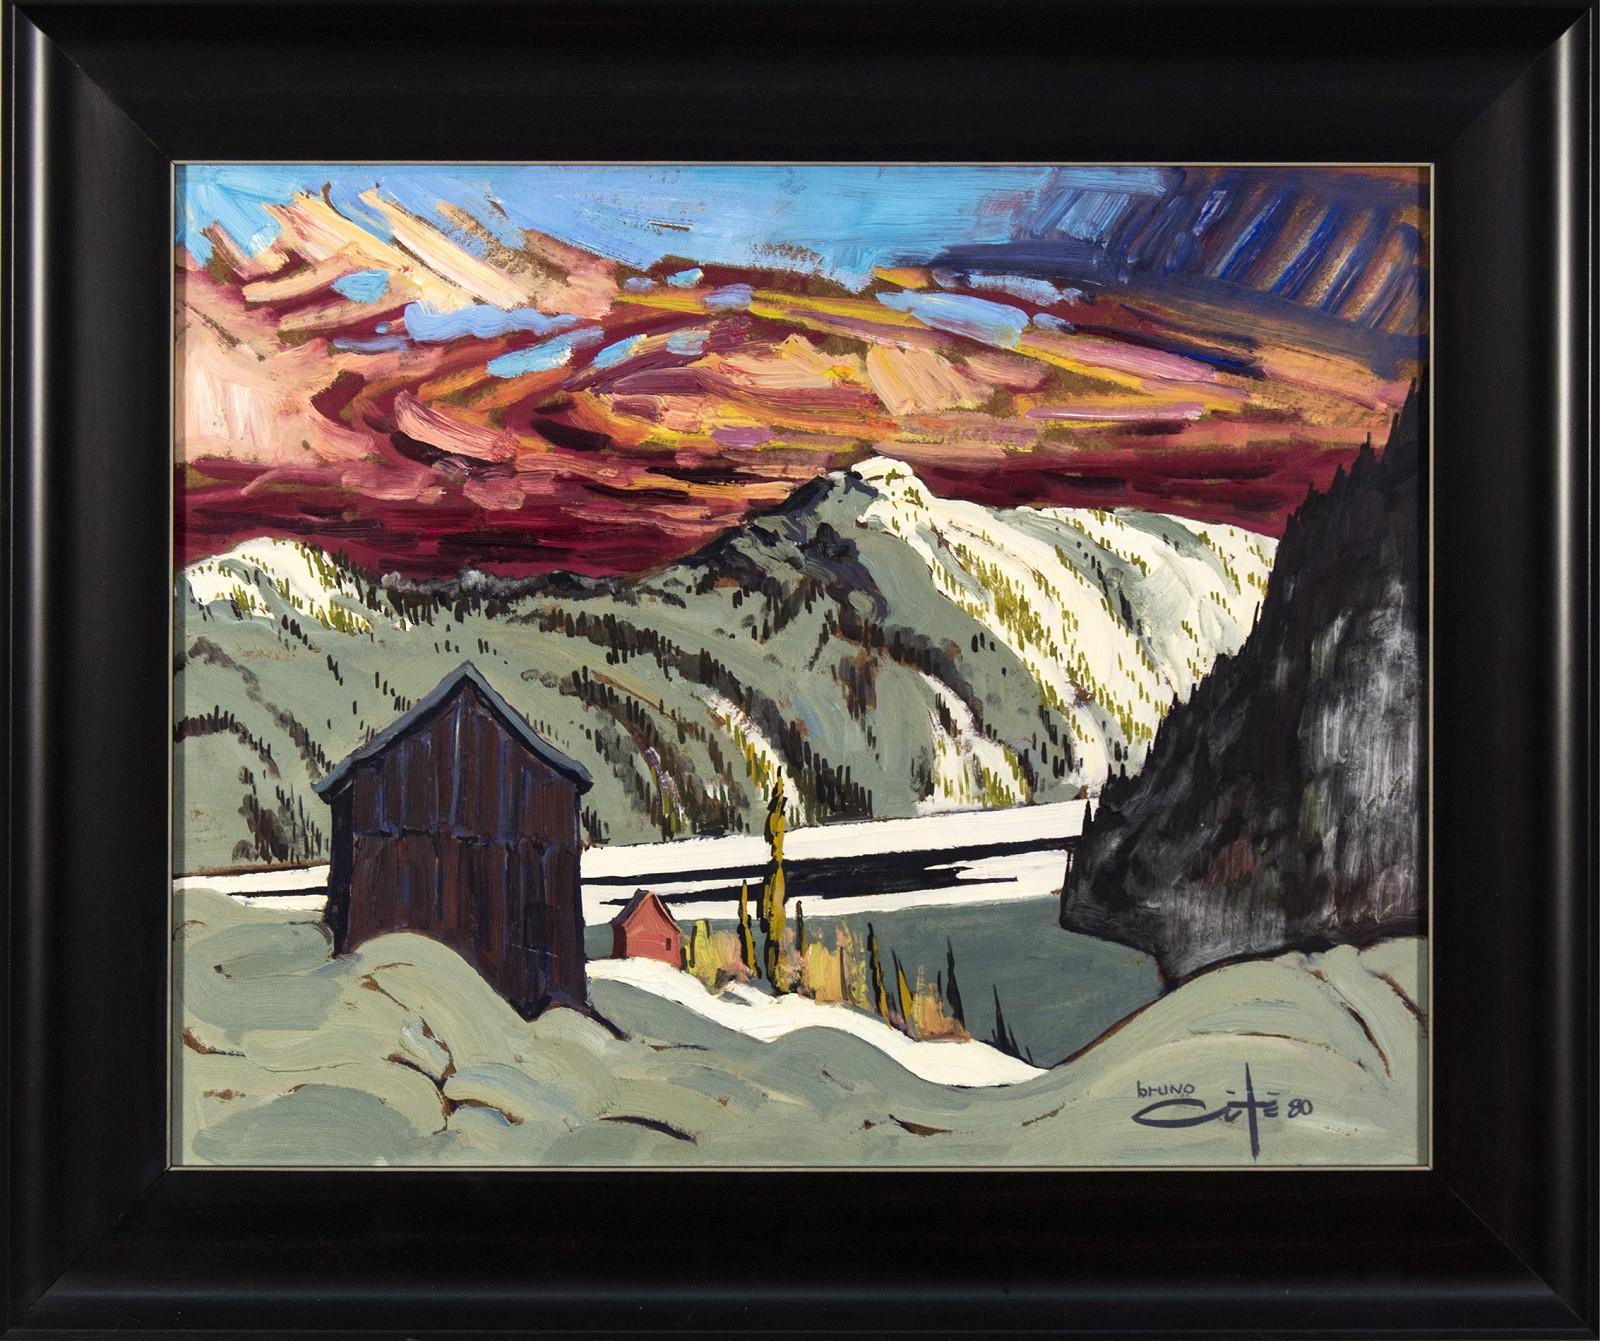 Bruno Côté Landscape Painting - Pres De Sacre Coeur - 20th century expressionistic, mountainous landscape